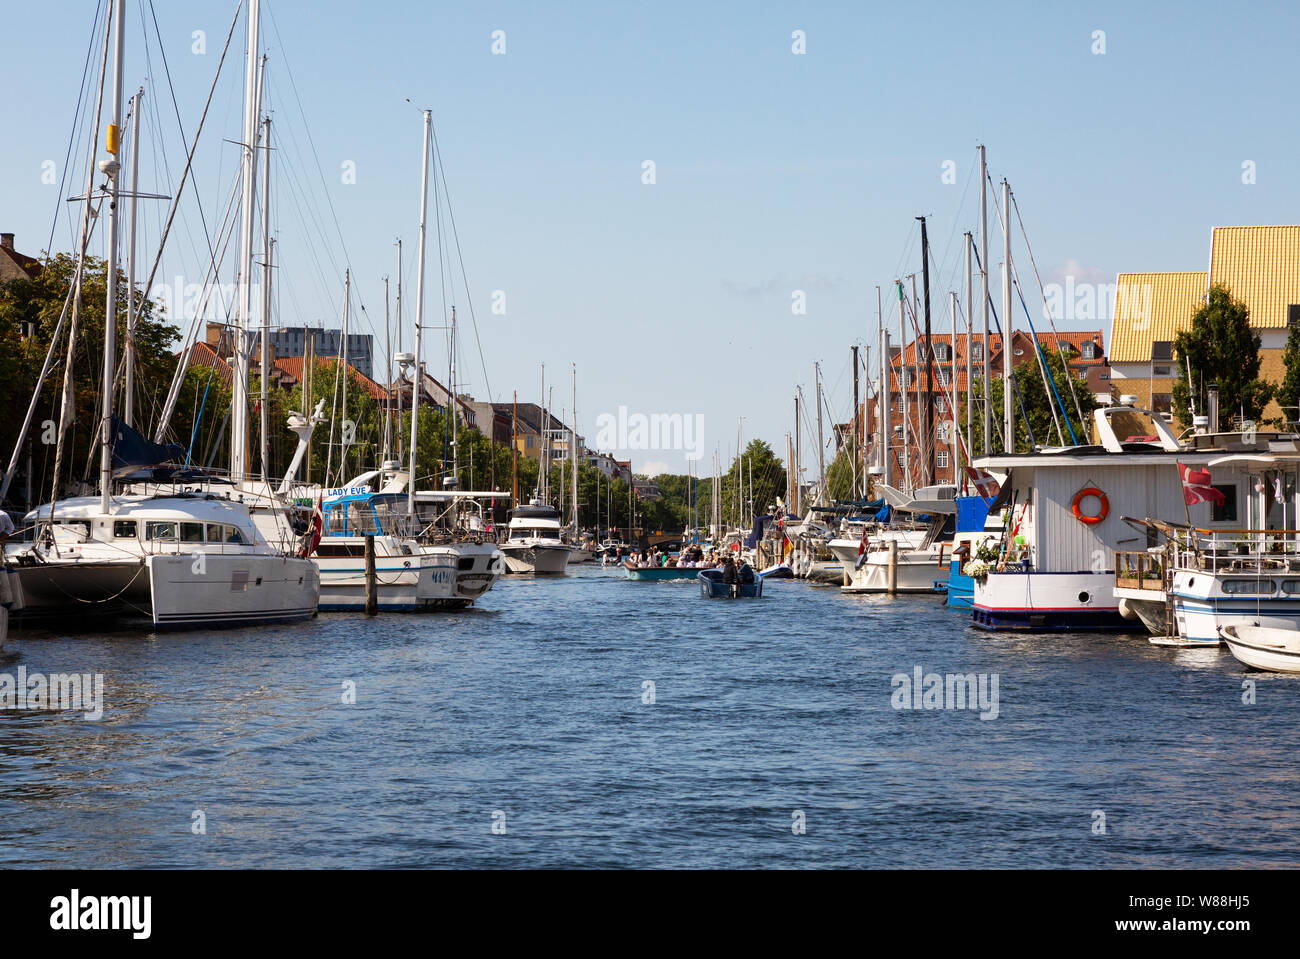 Christianshavn Copenhagen Denmark - canal scene in summer, Christianshavn, Copenhagen Scandinavia Europe Stock Photo